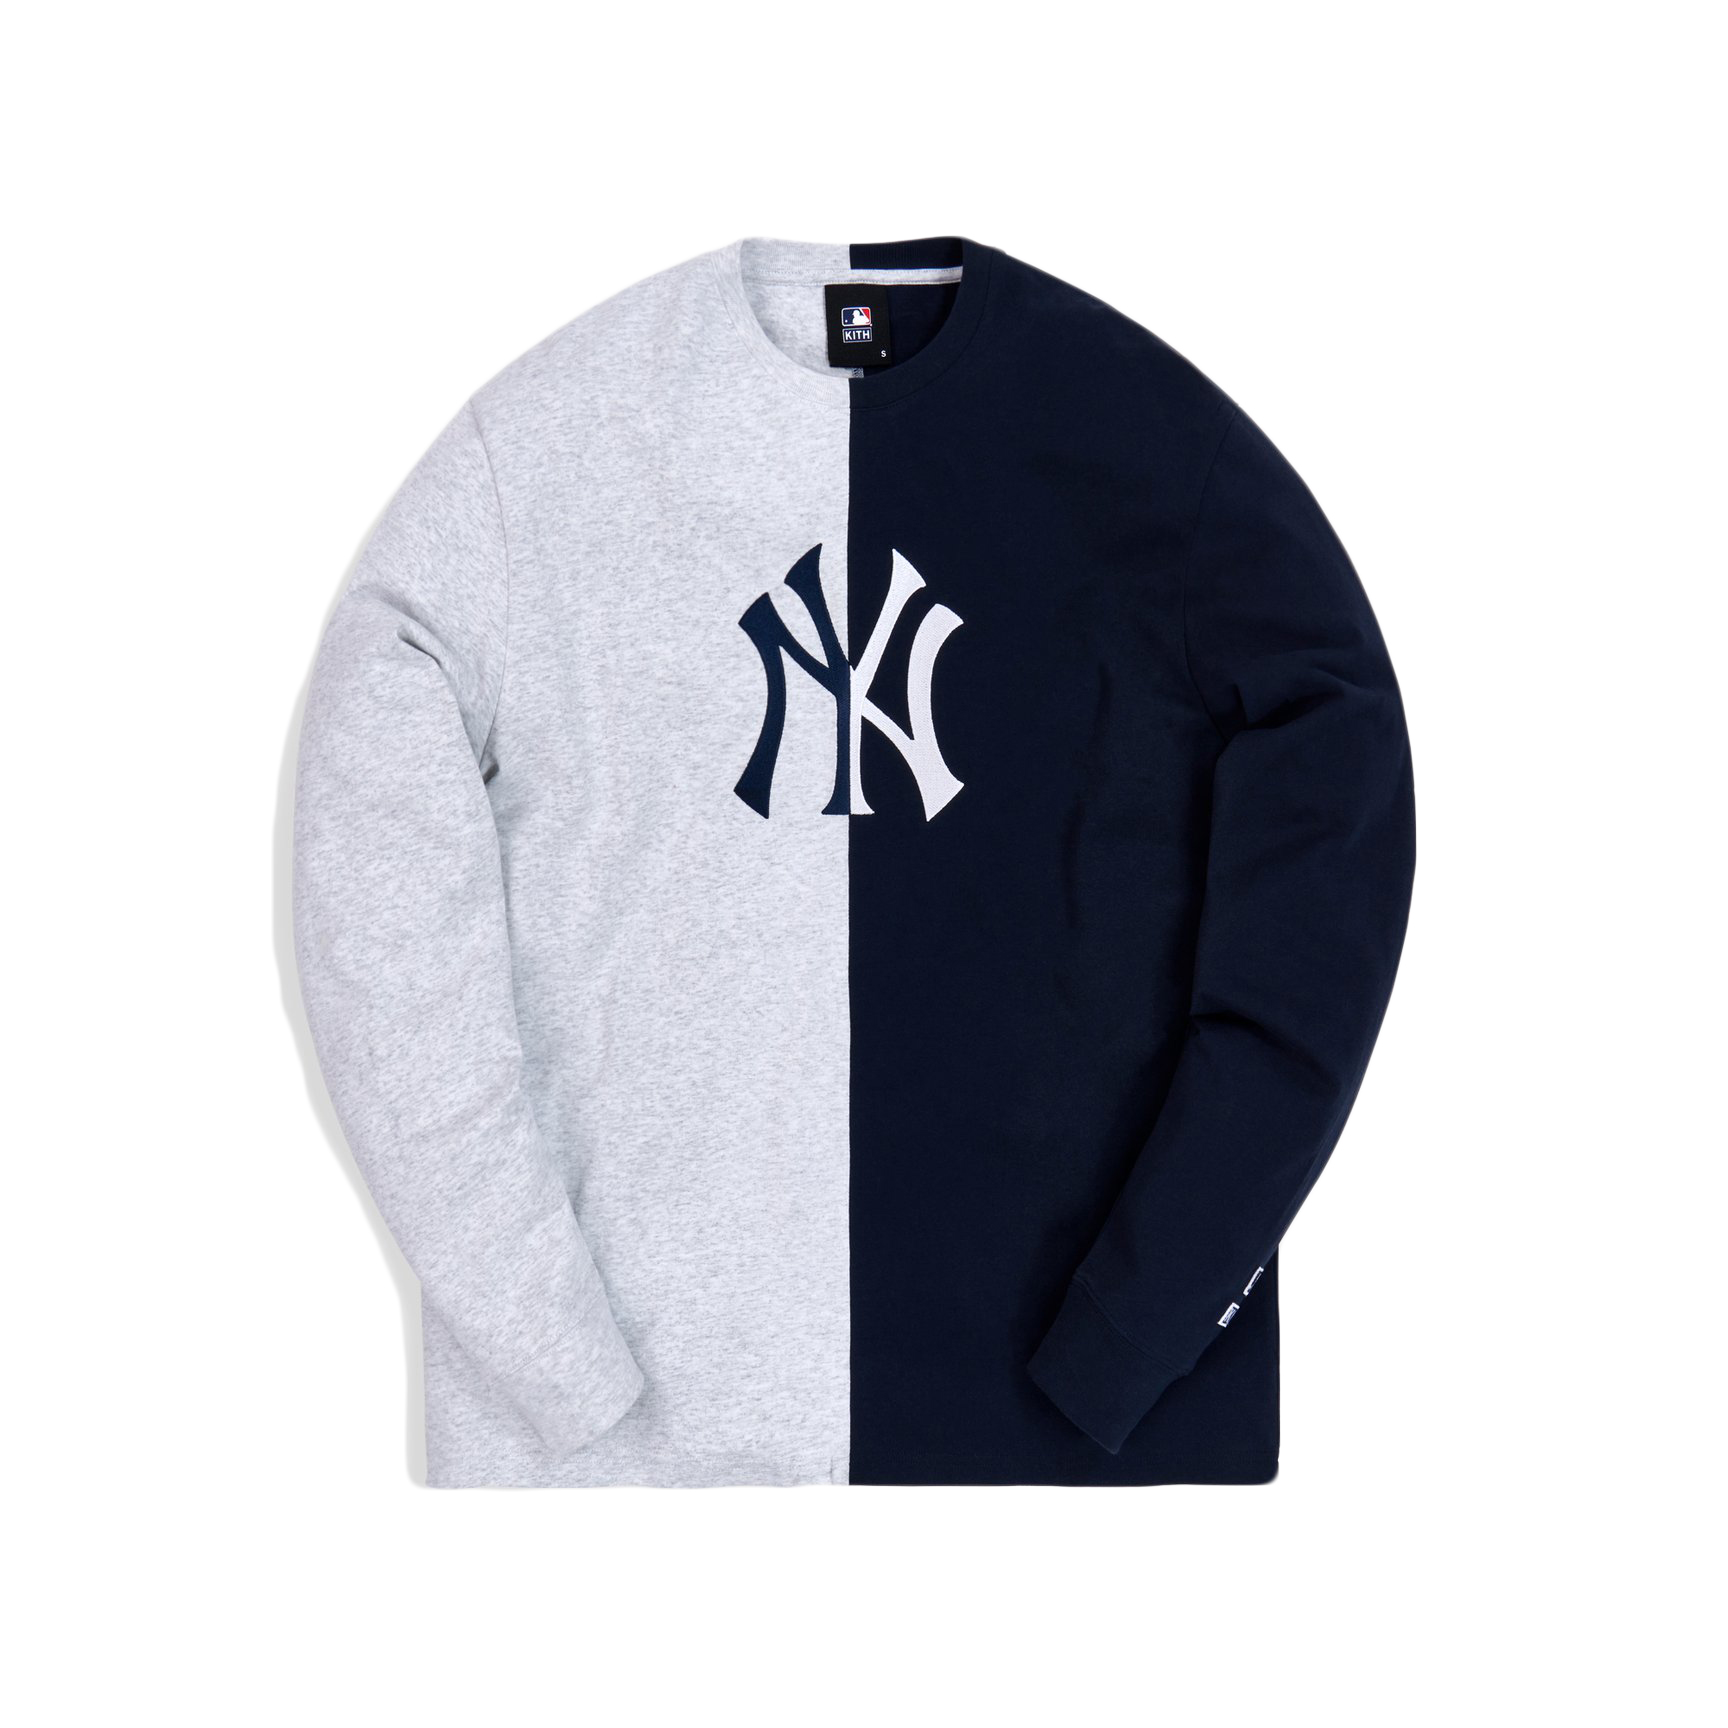 Kith For Major League Baseball New York Yankees Split L/S Tee